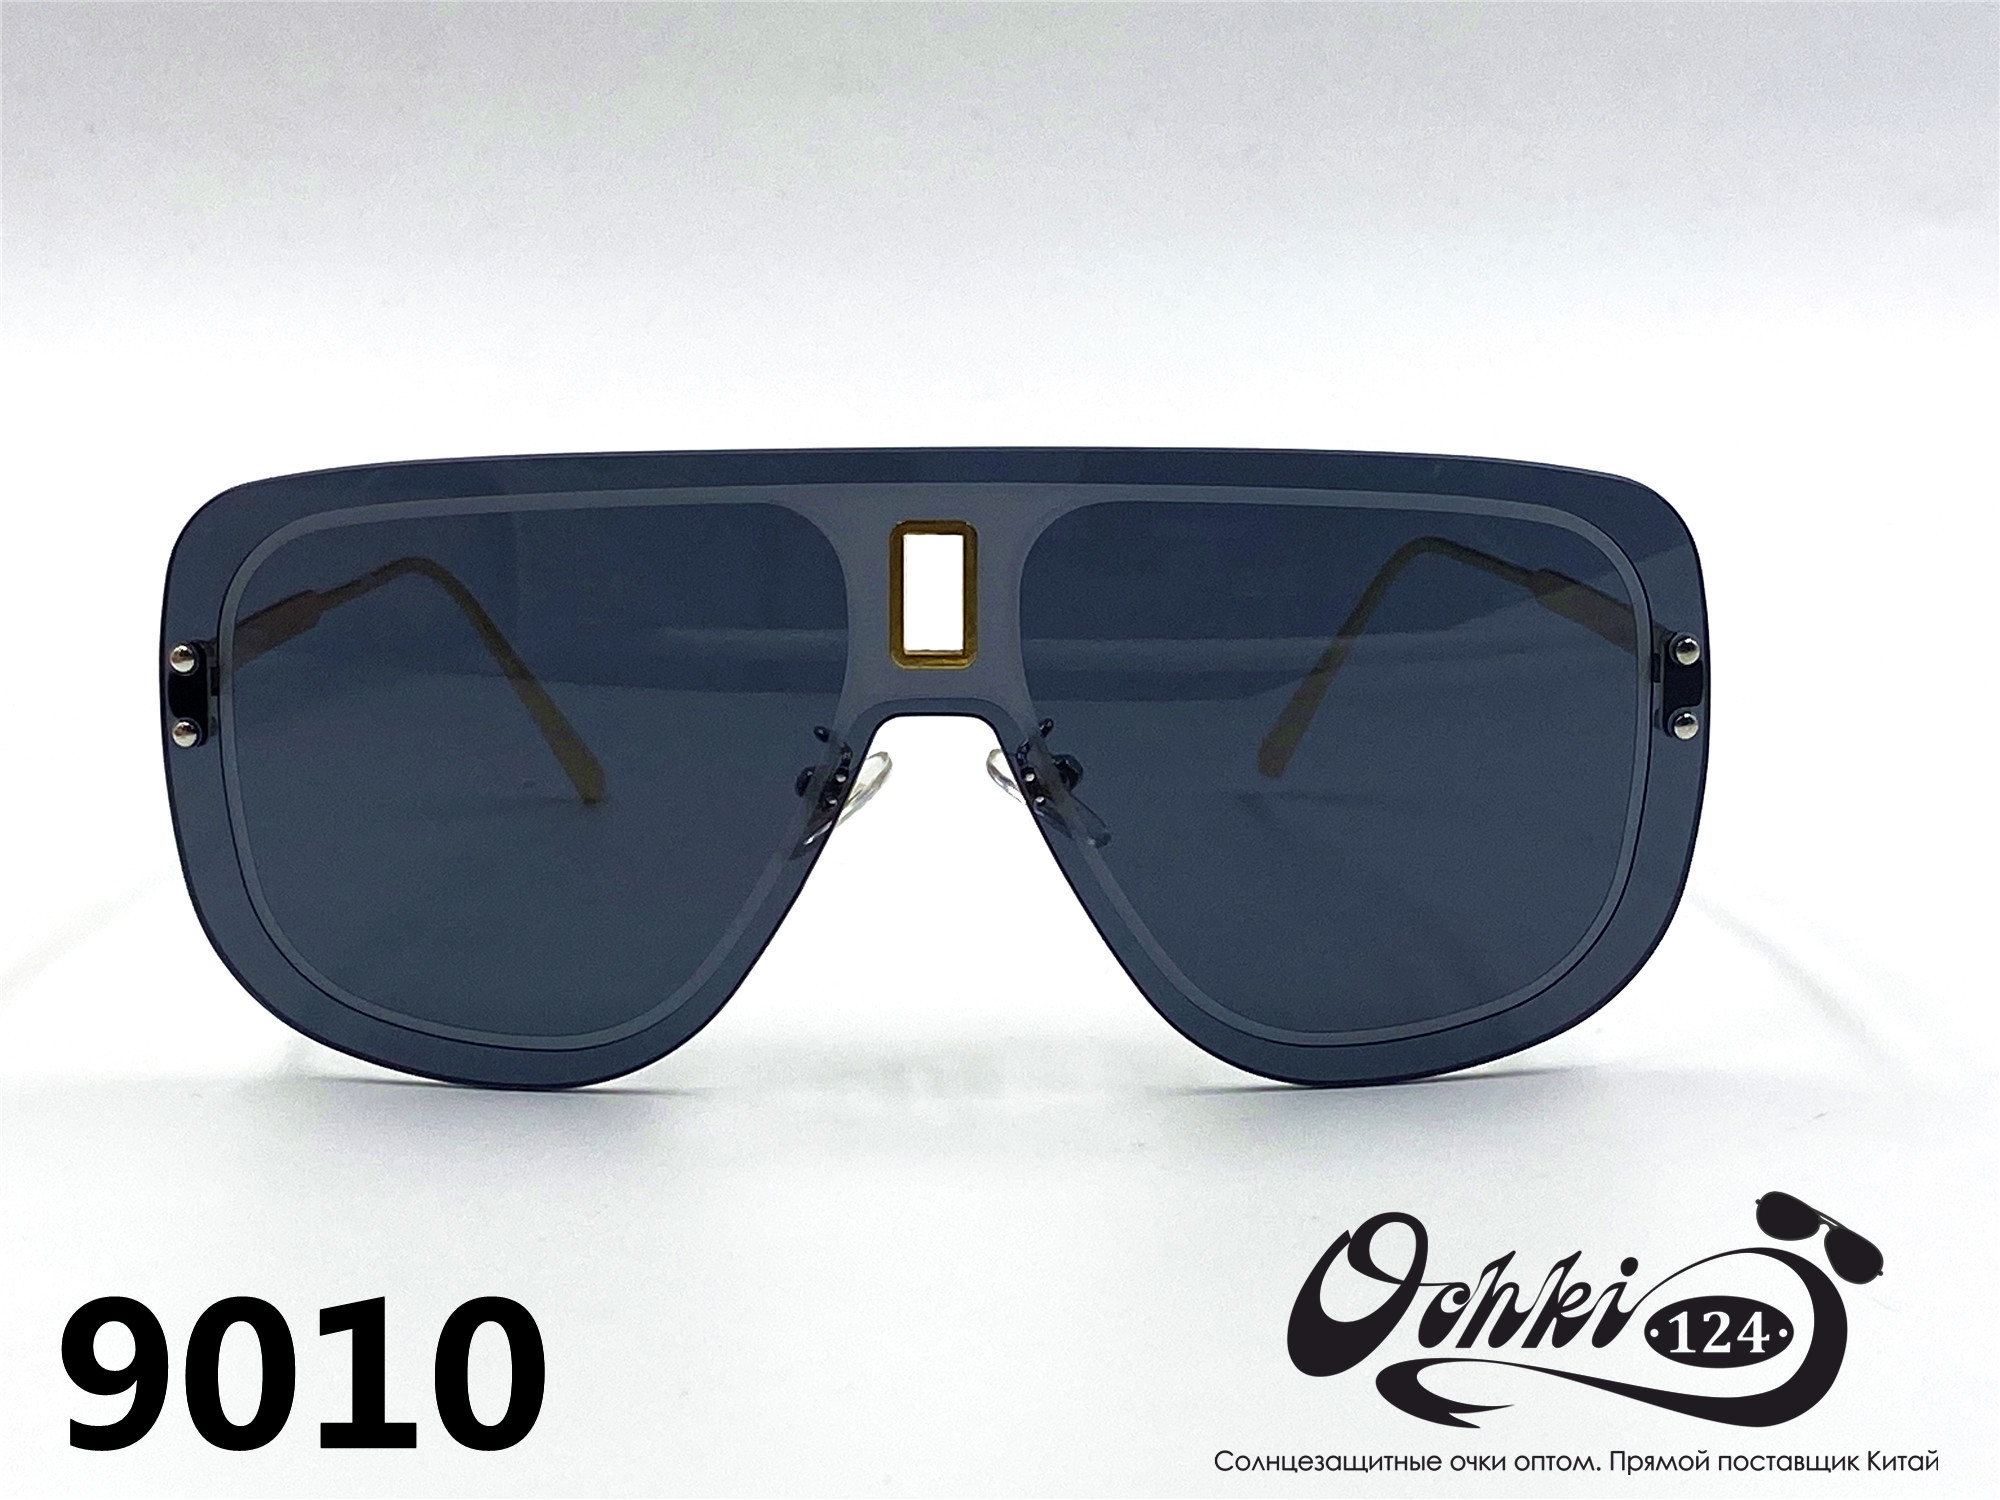  Солнцезащитные очки картинка 2022 Женские Пластик Авиаторы Caipai 9010-1 